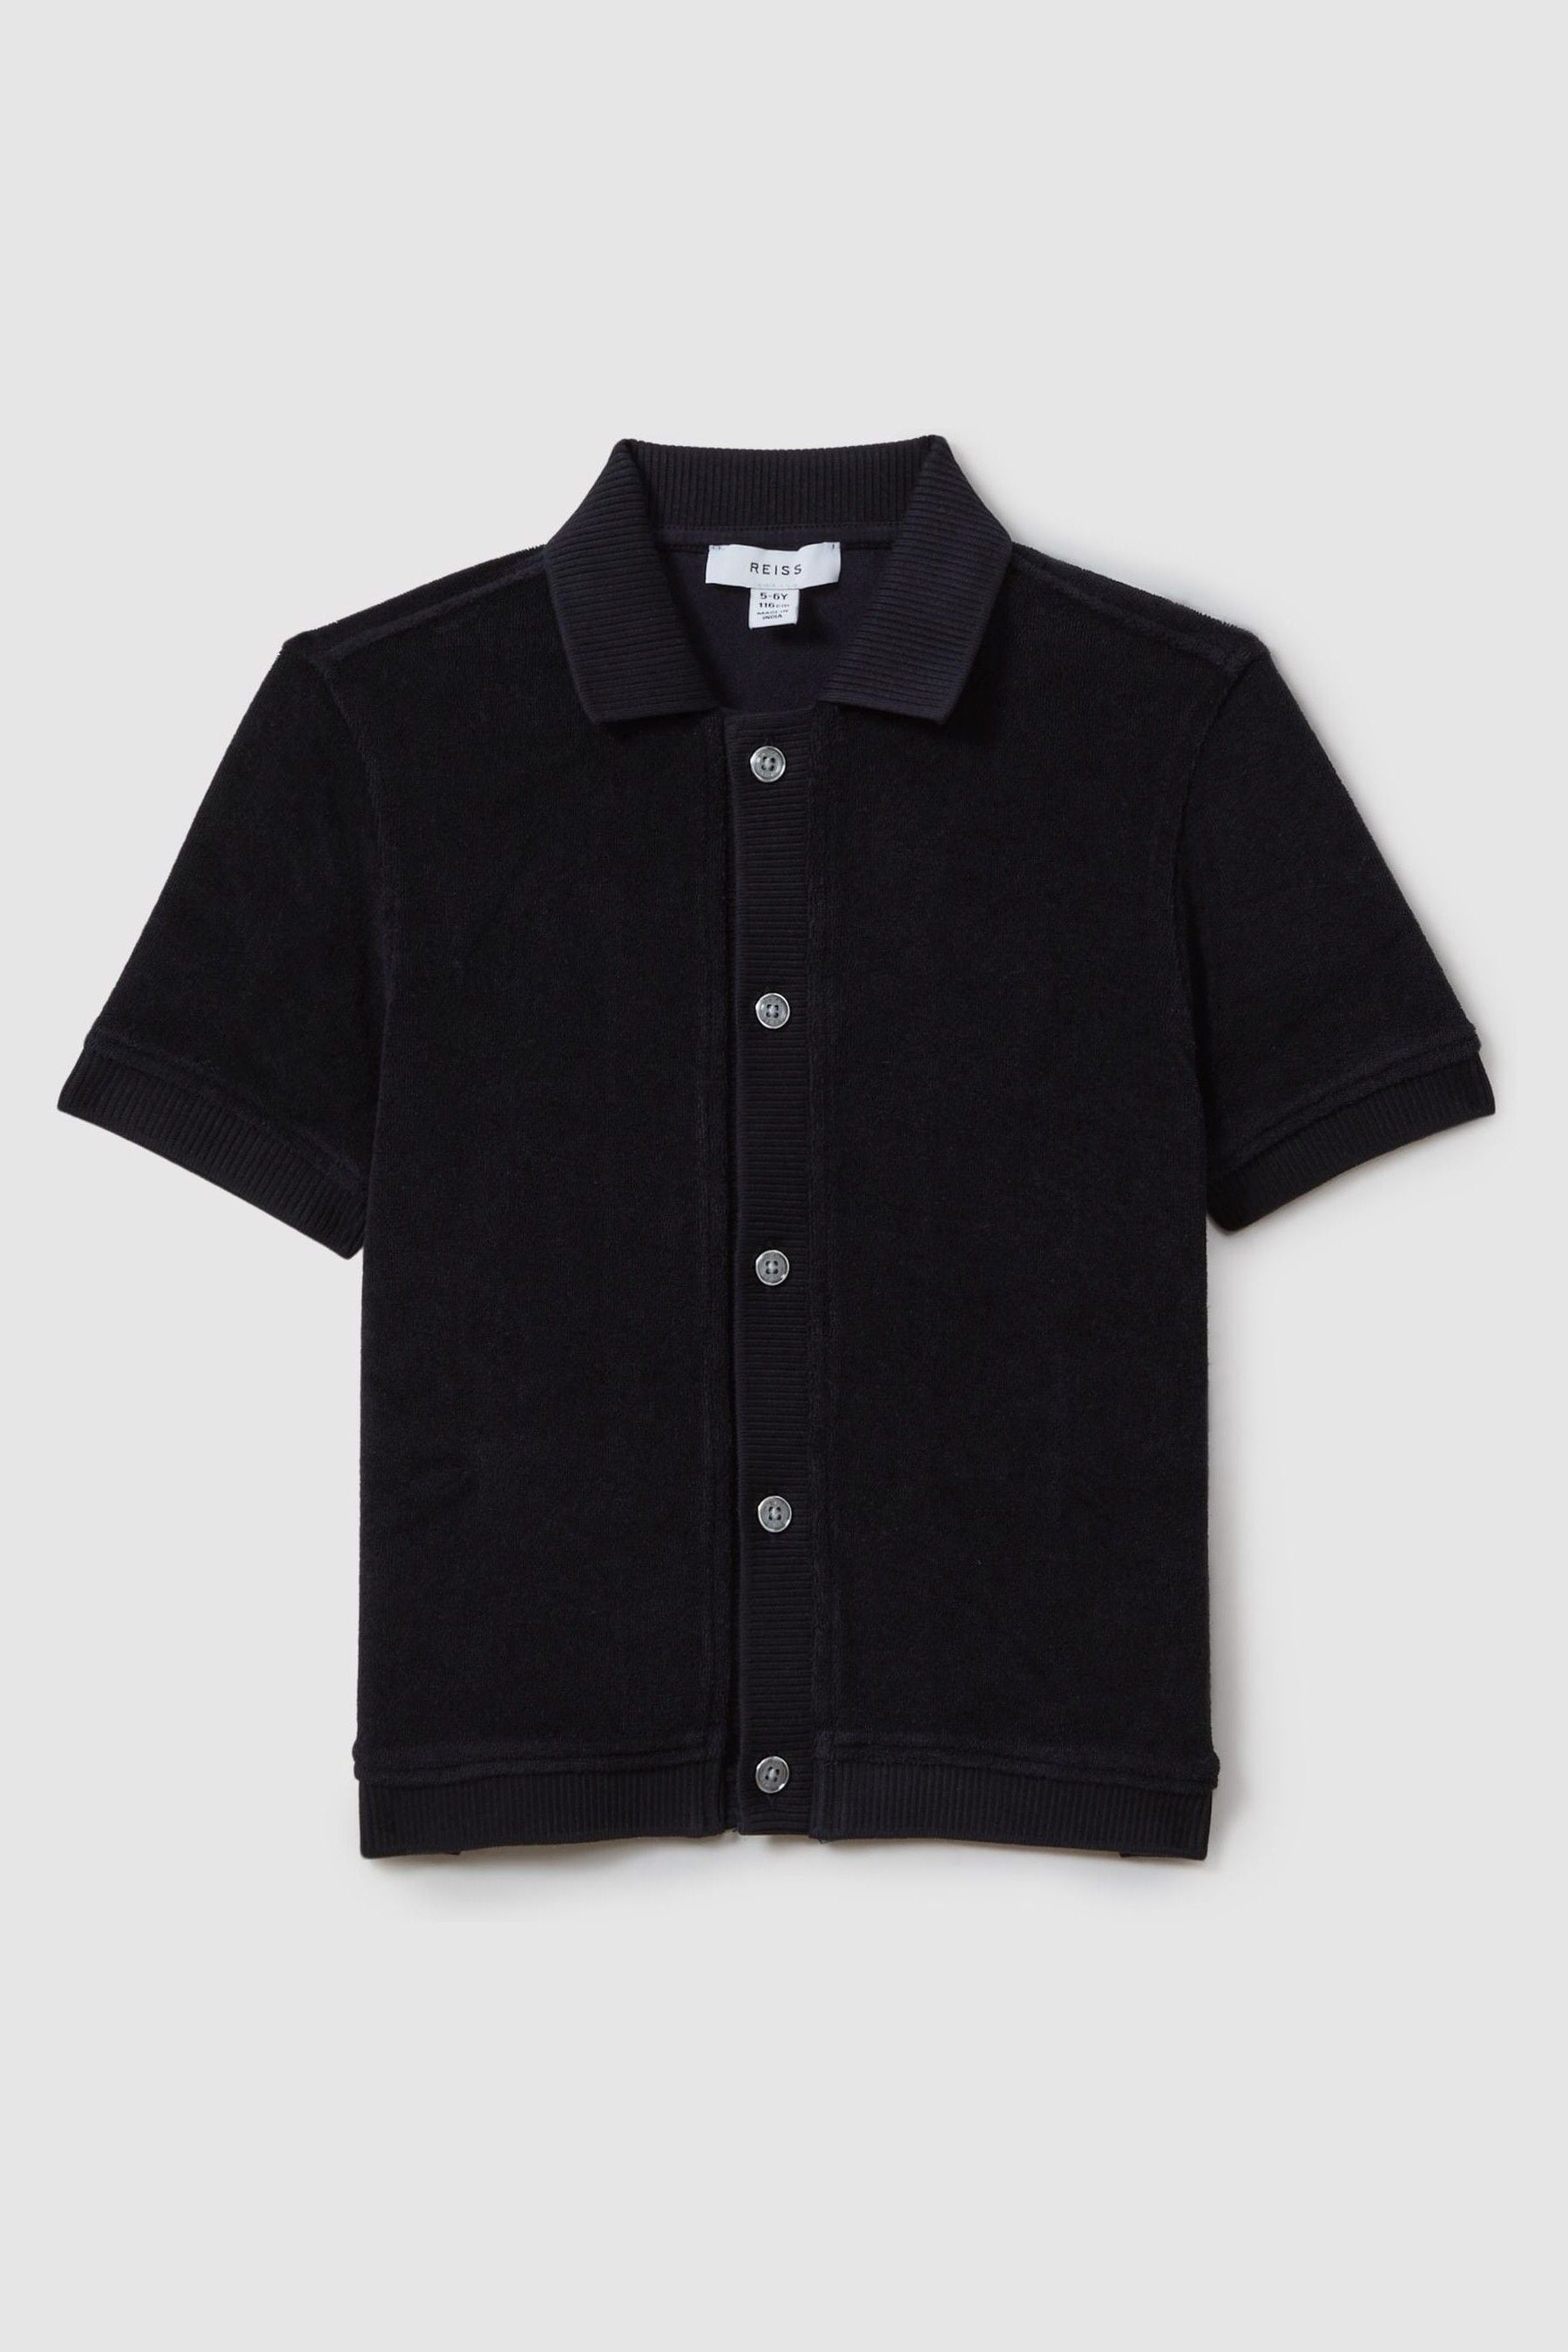 Shop Reiss Eden - Navy Towelling Cuban Collar Shirt, Uk 11-12 Yrs